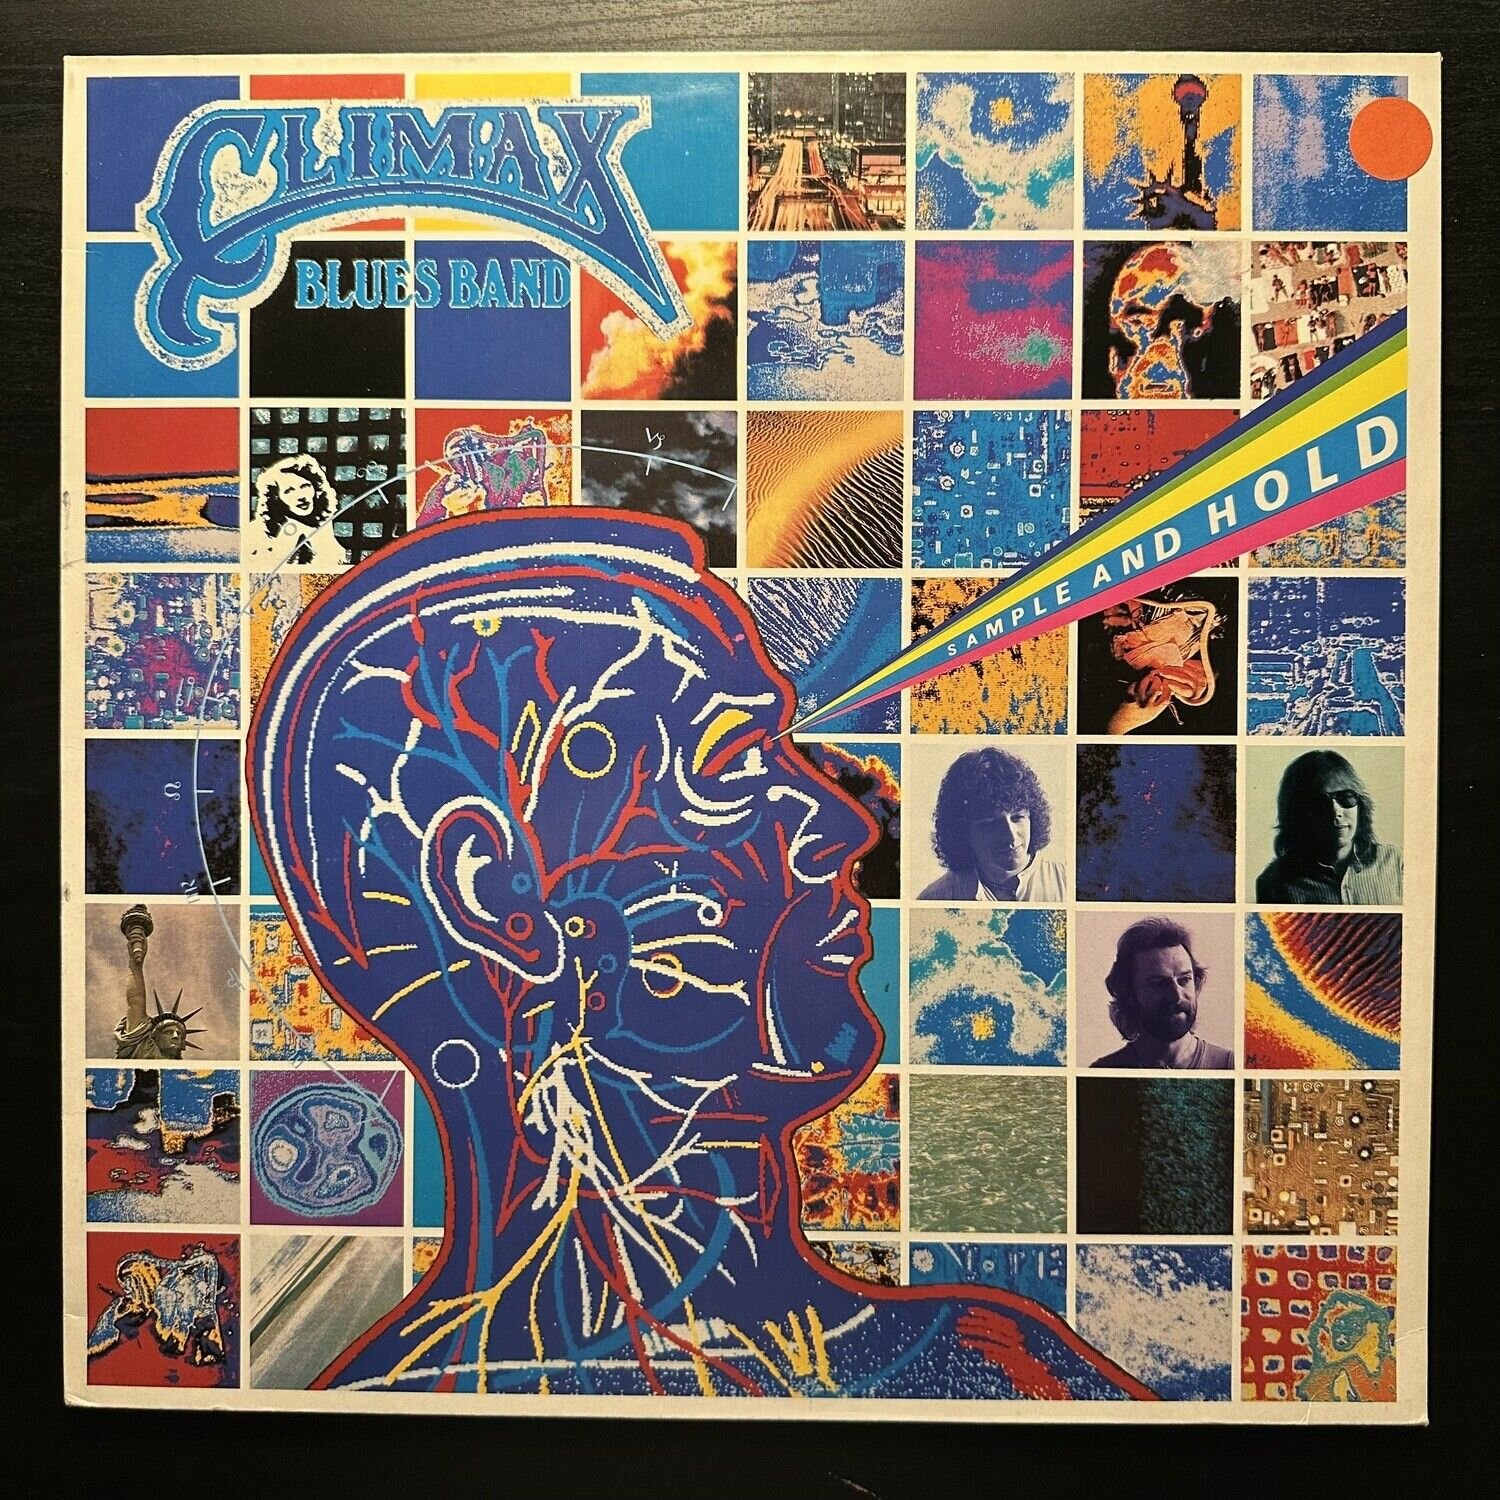 Виниловая пластинка Climax Blues Band Sample And Hold (Европа 1983г.)